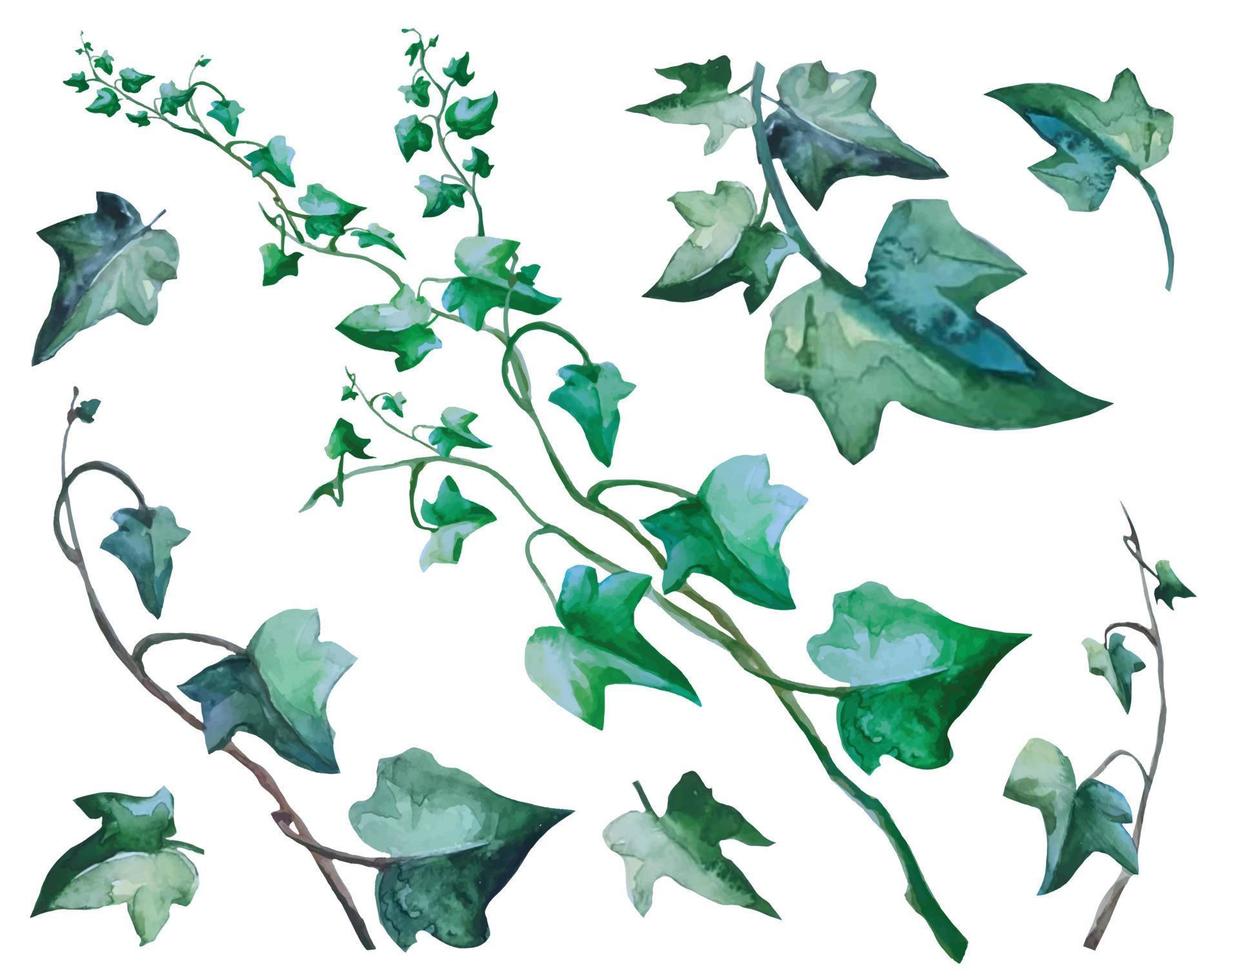 impostare la pianta di edera con rami rampicanti, vettore di illustrazione botanica della vite